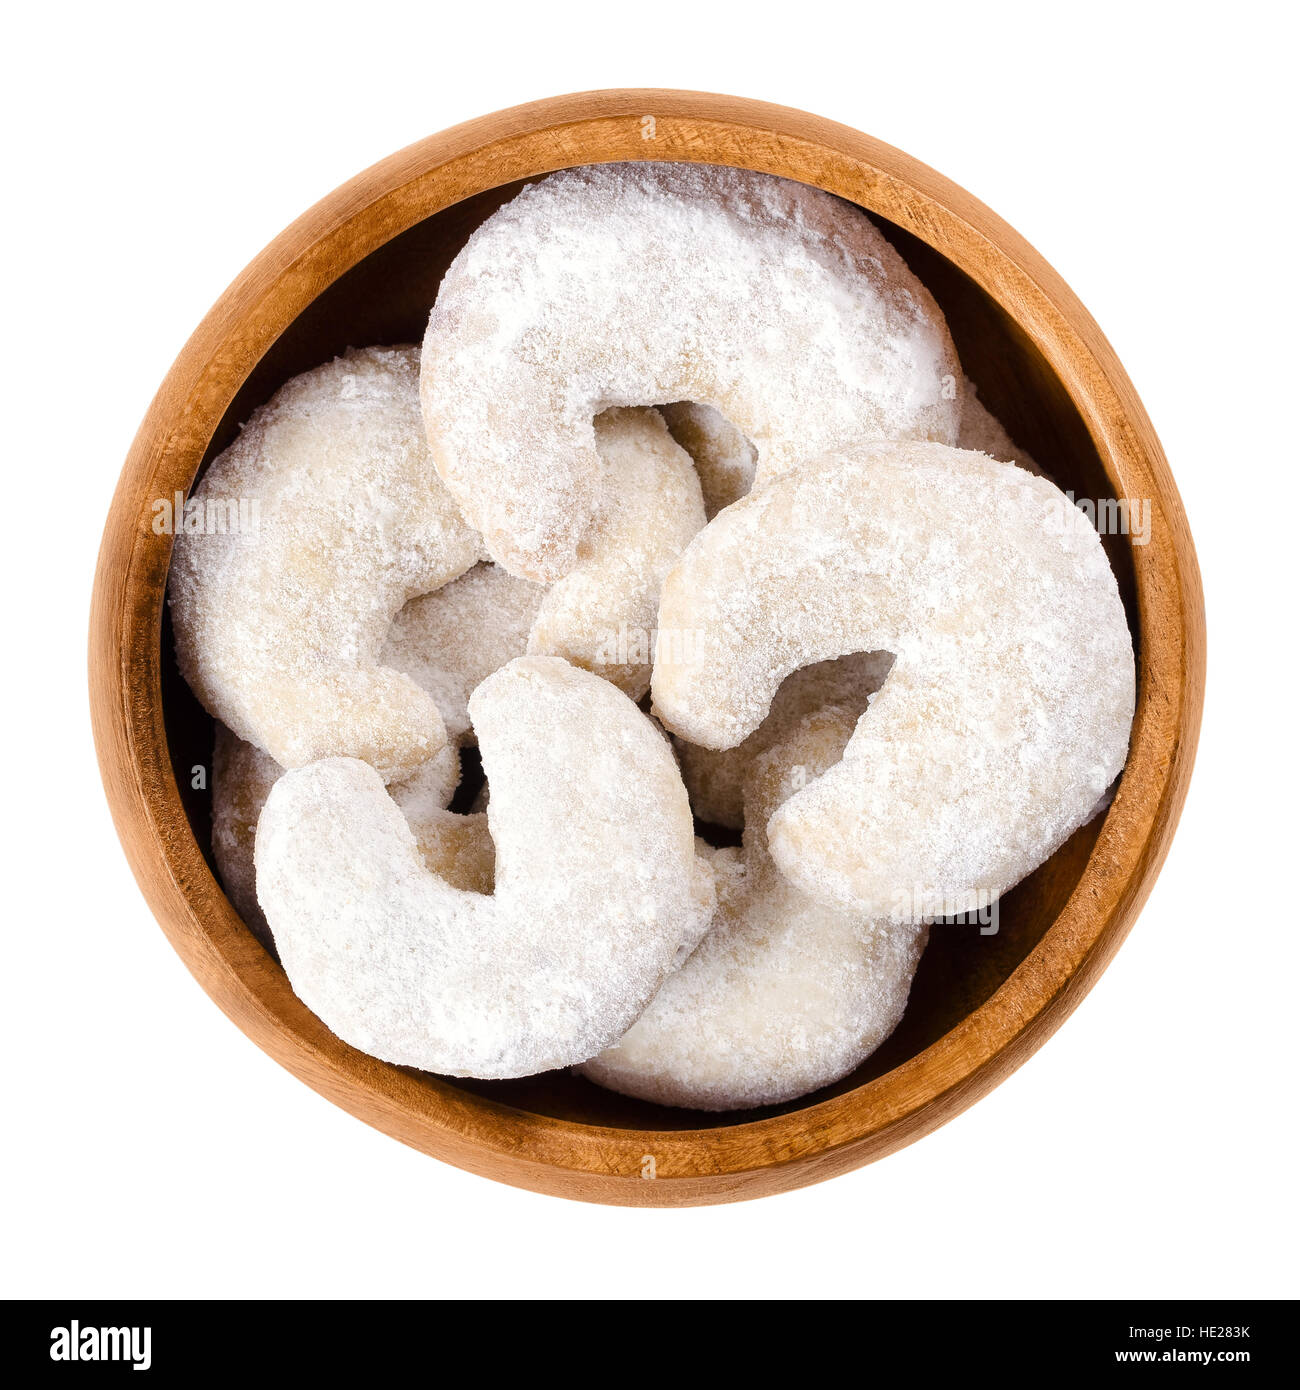 A forma di mezzaluna biscotti alla vaniglia nel recipiente di legno. La vaniglia mandorla mezze lune, Vanillekipferl. Natale austriaco scecialty cookie. Foto Stock